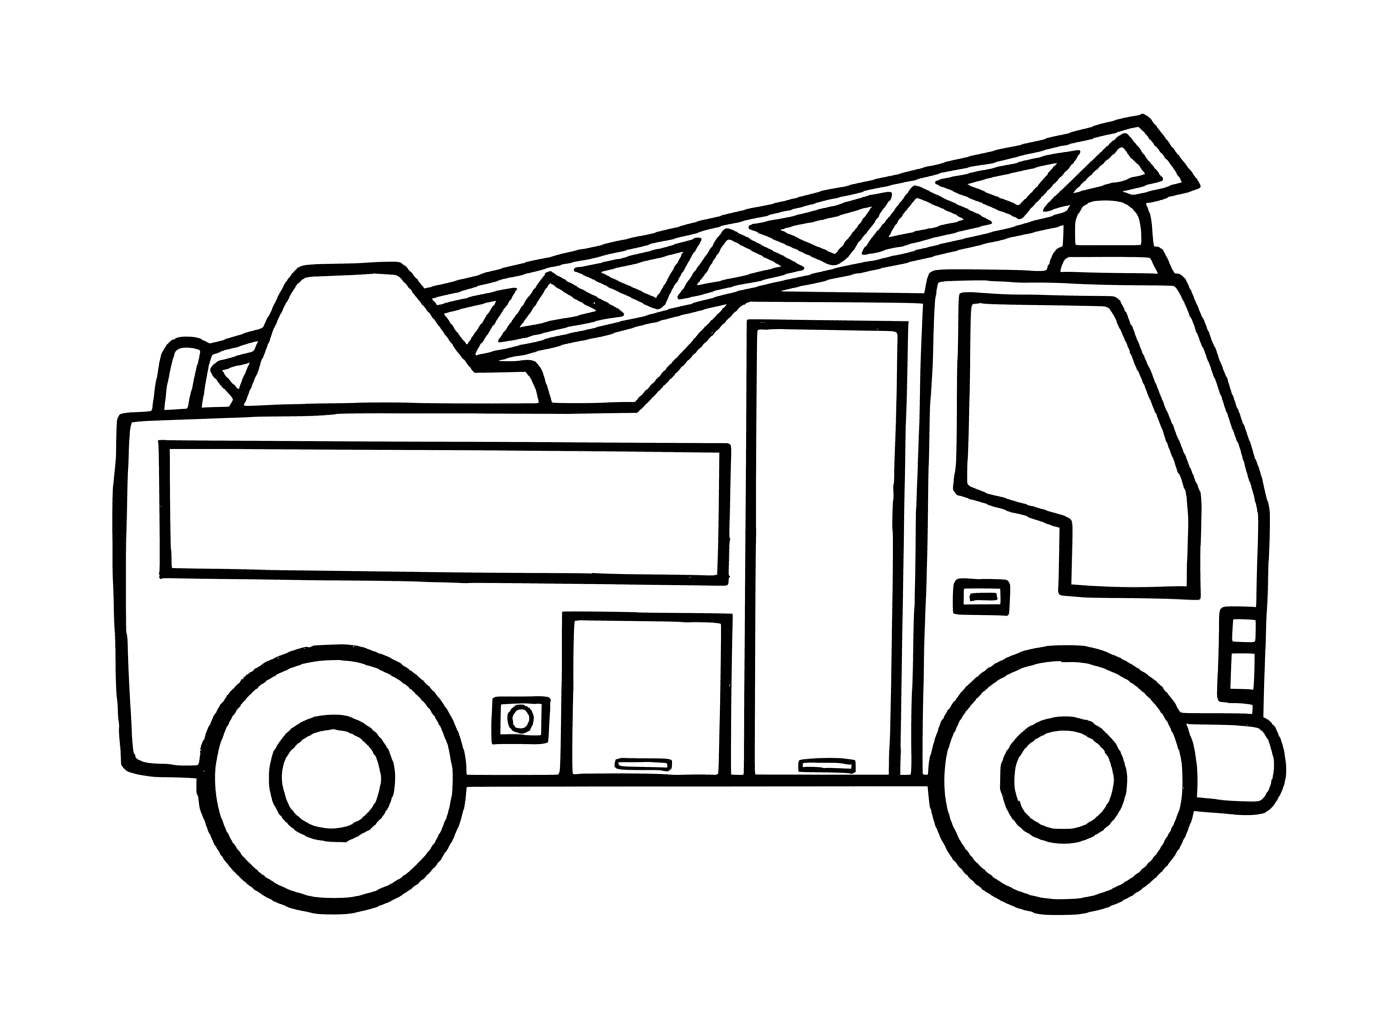  A fire truck for kindergarten 